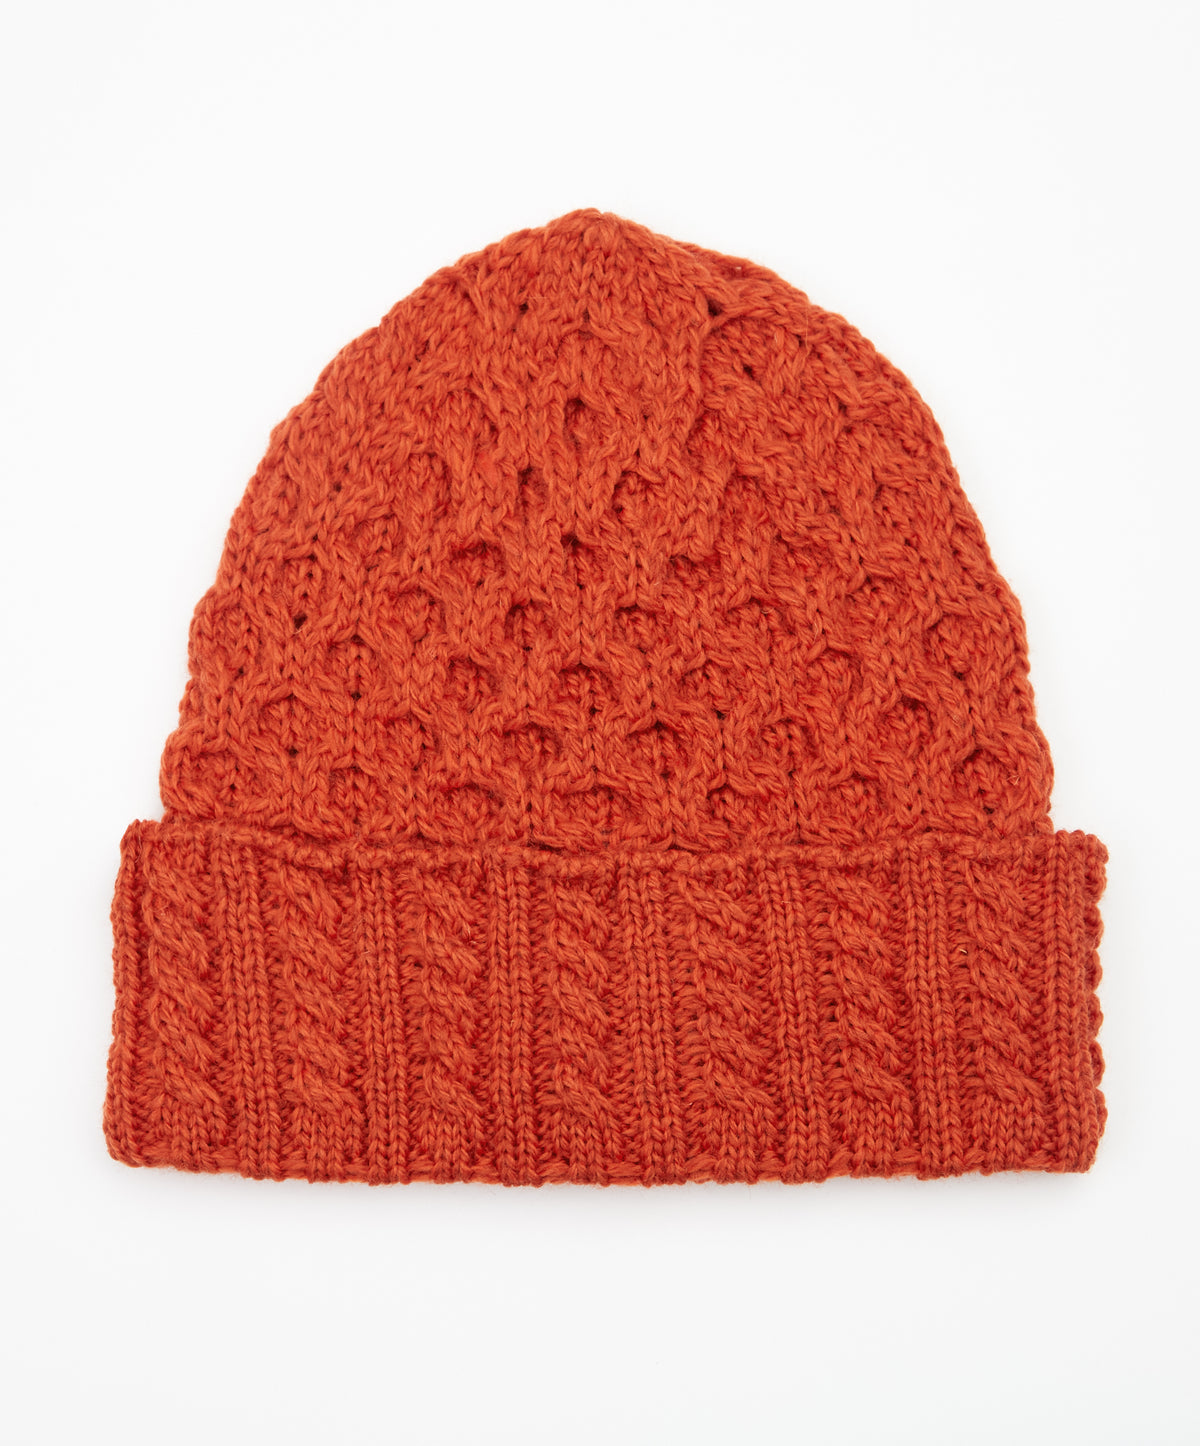 IrelandsEye Knitwear Aran Hat Orange Marl